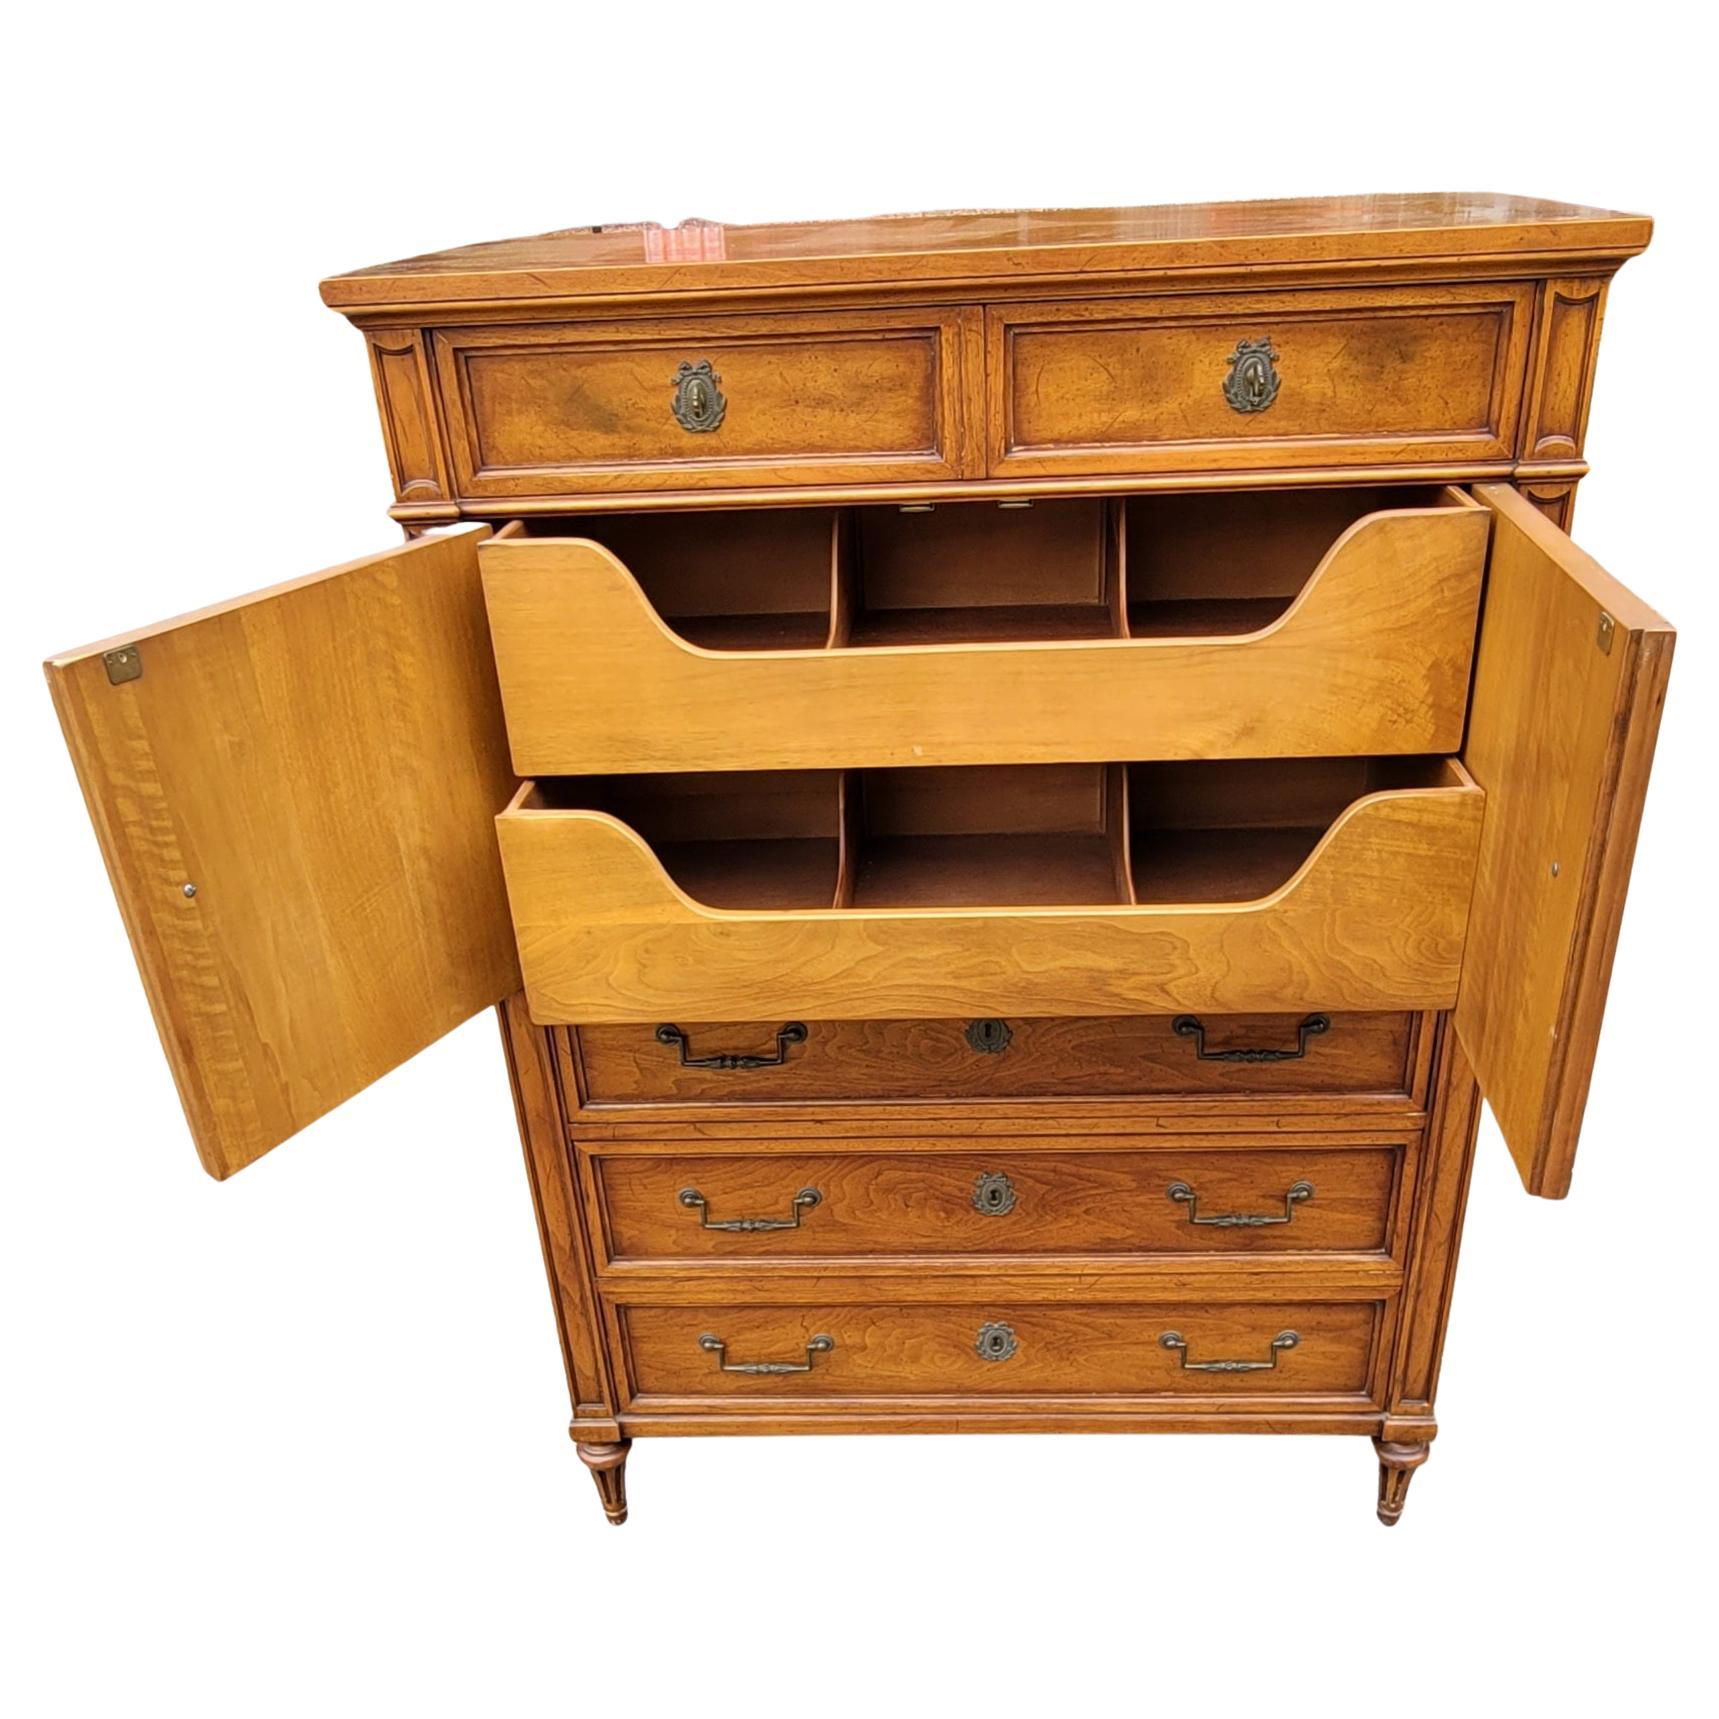 Une commode en bois fruitier Henredon custom Folio one en très bon état vintage. Comprend 2 petits tiroirs supérieurs, un meuble à deux portes et 3 grands tiroirs inférieurs. 
Mesure 40